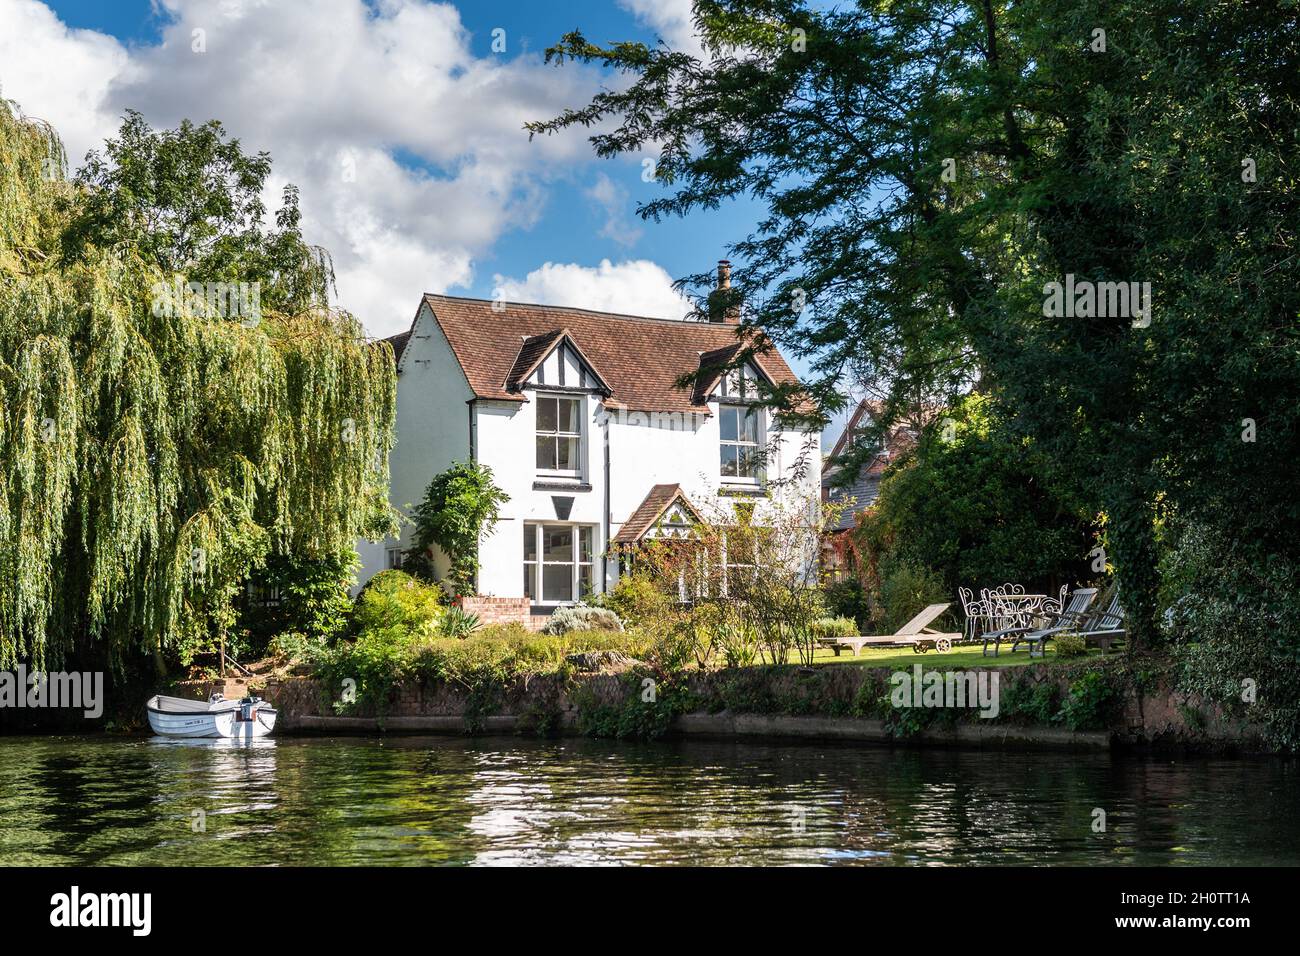 Haus und Motorboot auf dem Fluss Avon, Stratford-upon-Avon, Warwickshire, Großbritannien. Stockfoto